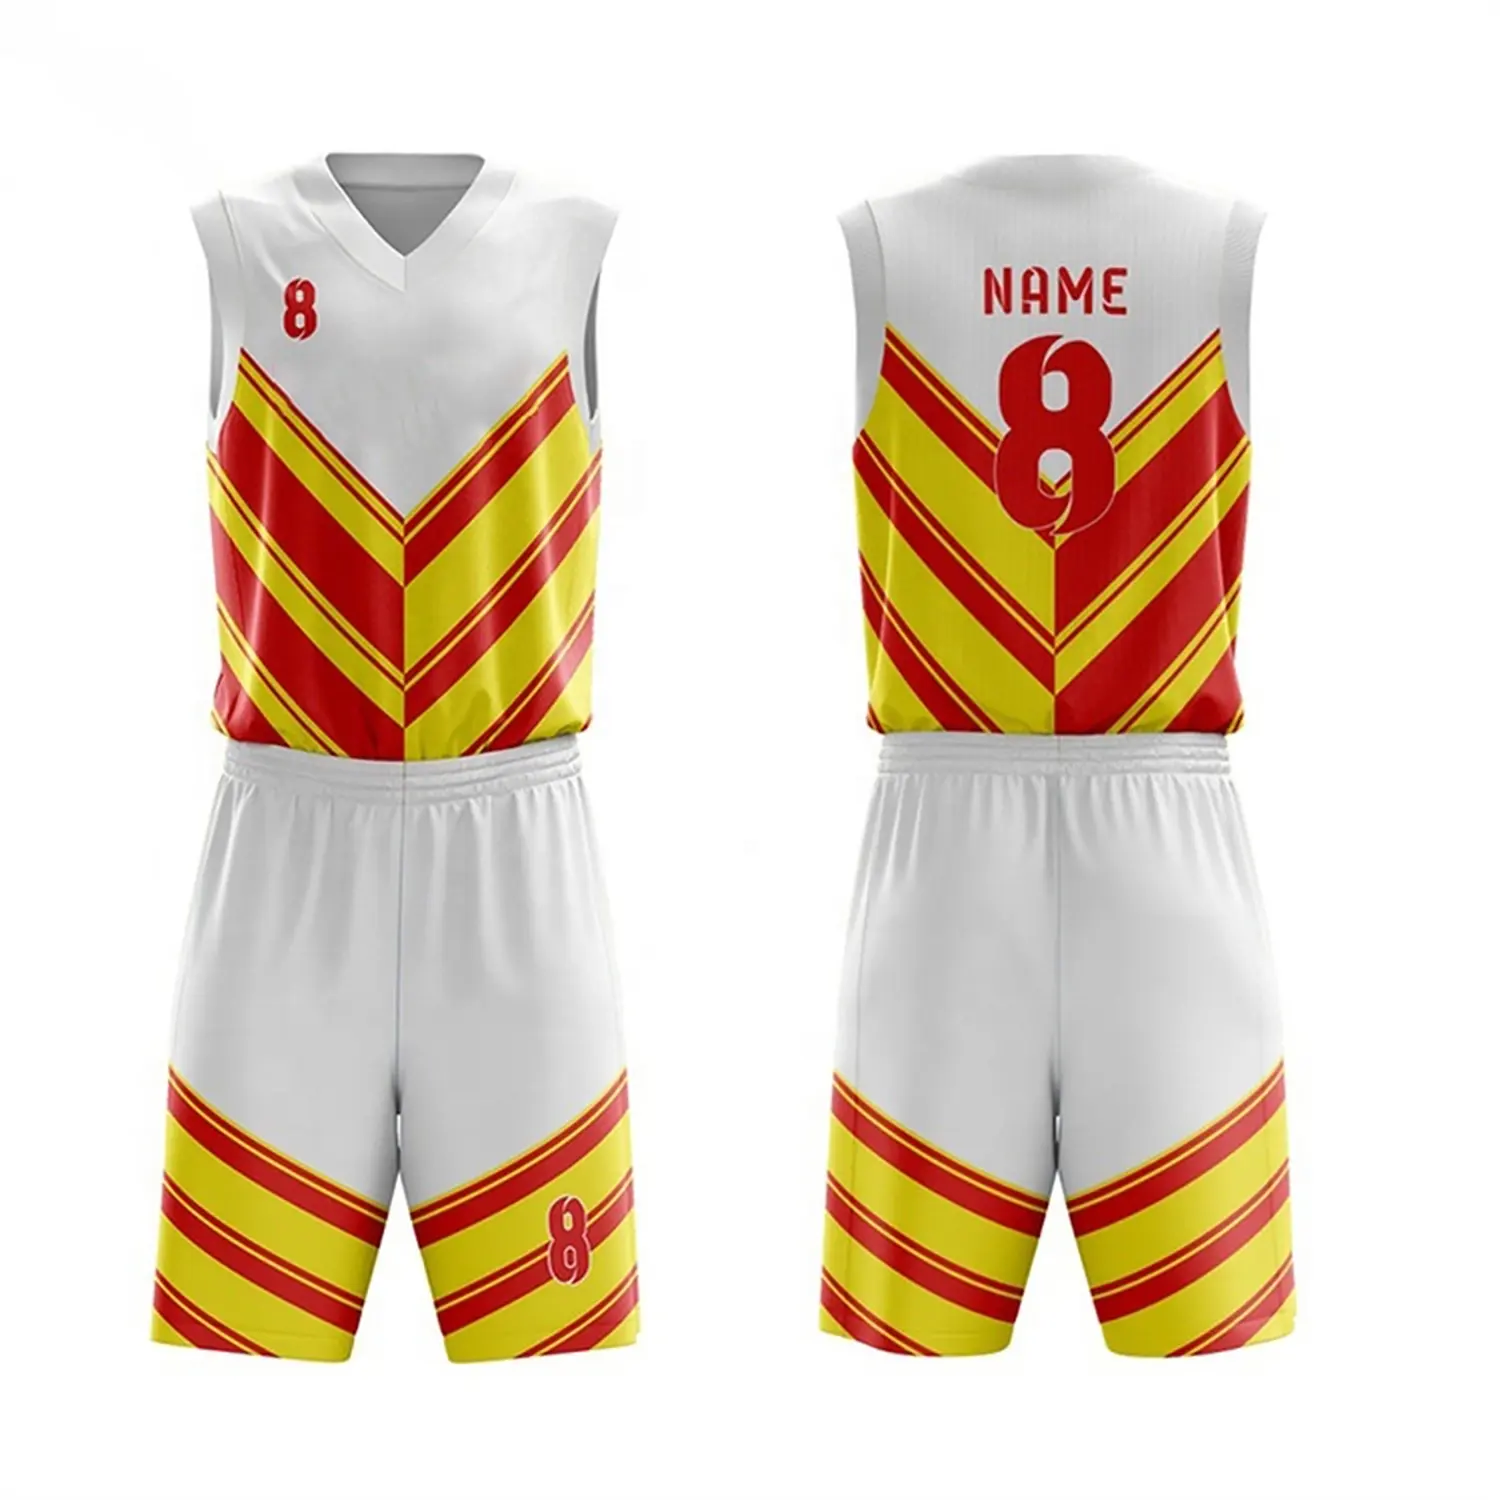 En son USA üniforma tasarım örgü yüceltilmiş özel esneklik basketbol formaları özel yapılmış geri dönüşümlü basketbol üniforması erkekler